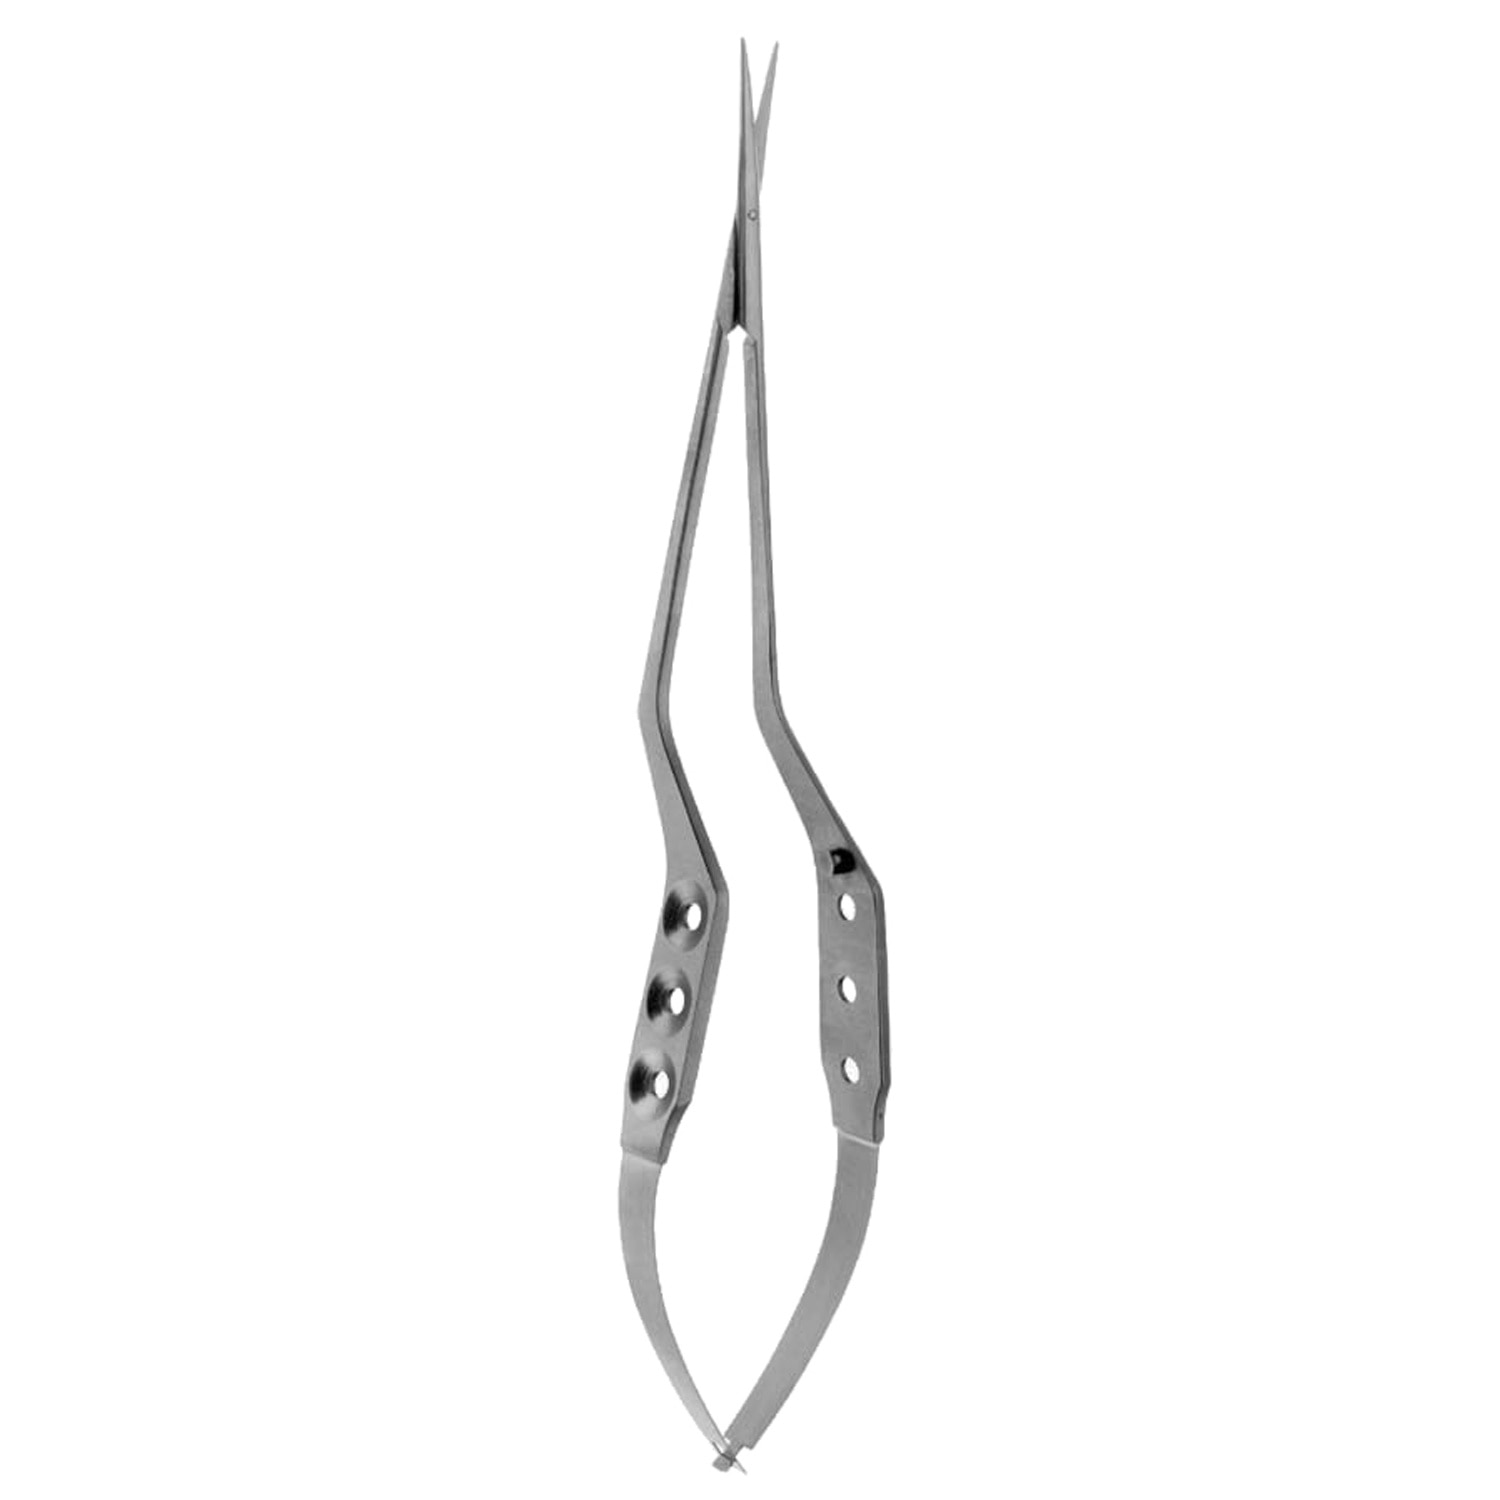 Yasargil micro scissors - NL4006 | BD